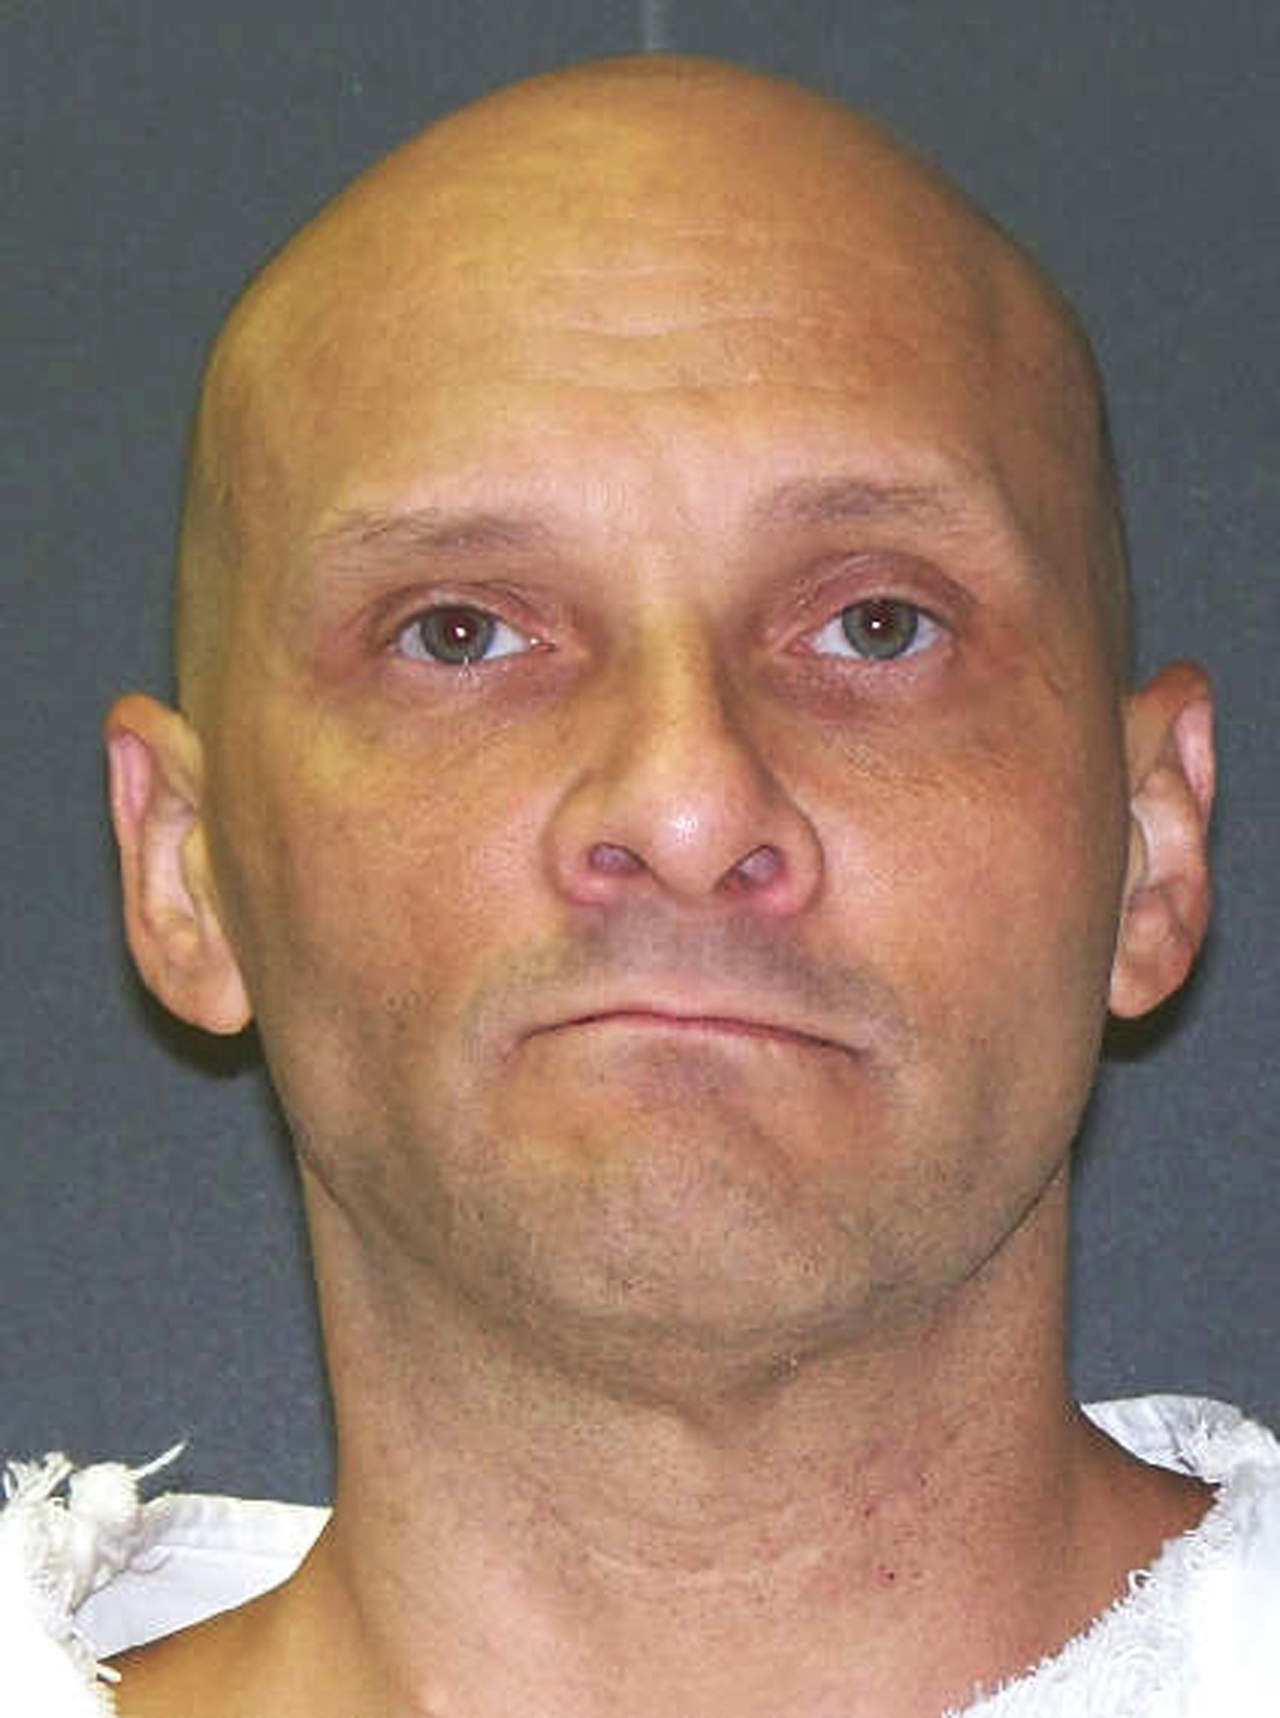 Wilkins, de 42 años, fue sentenciado por matar a Willie Freeman, de 40 años, y Mike Silva, de 33, el 28 de octubre de 2005. (ARCHIVO)